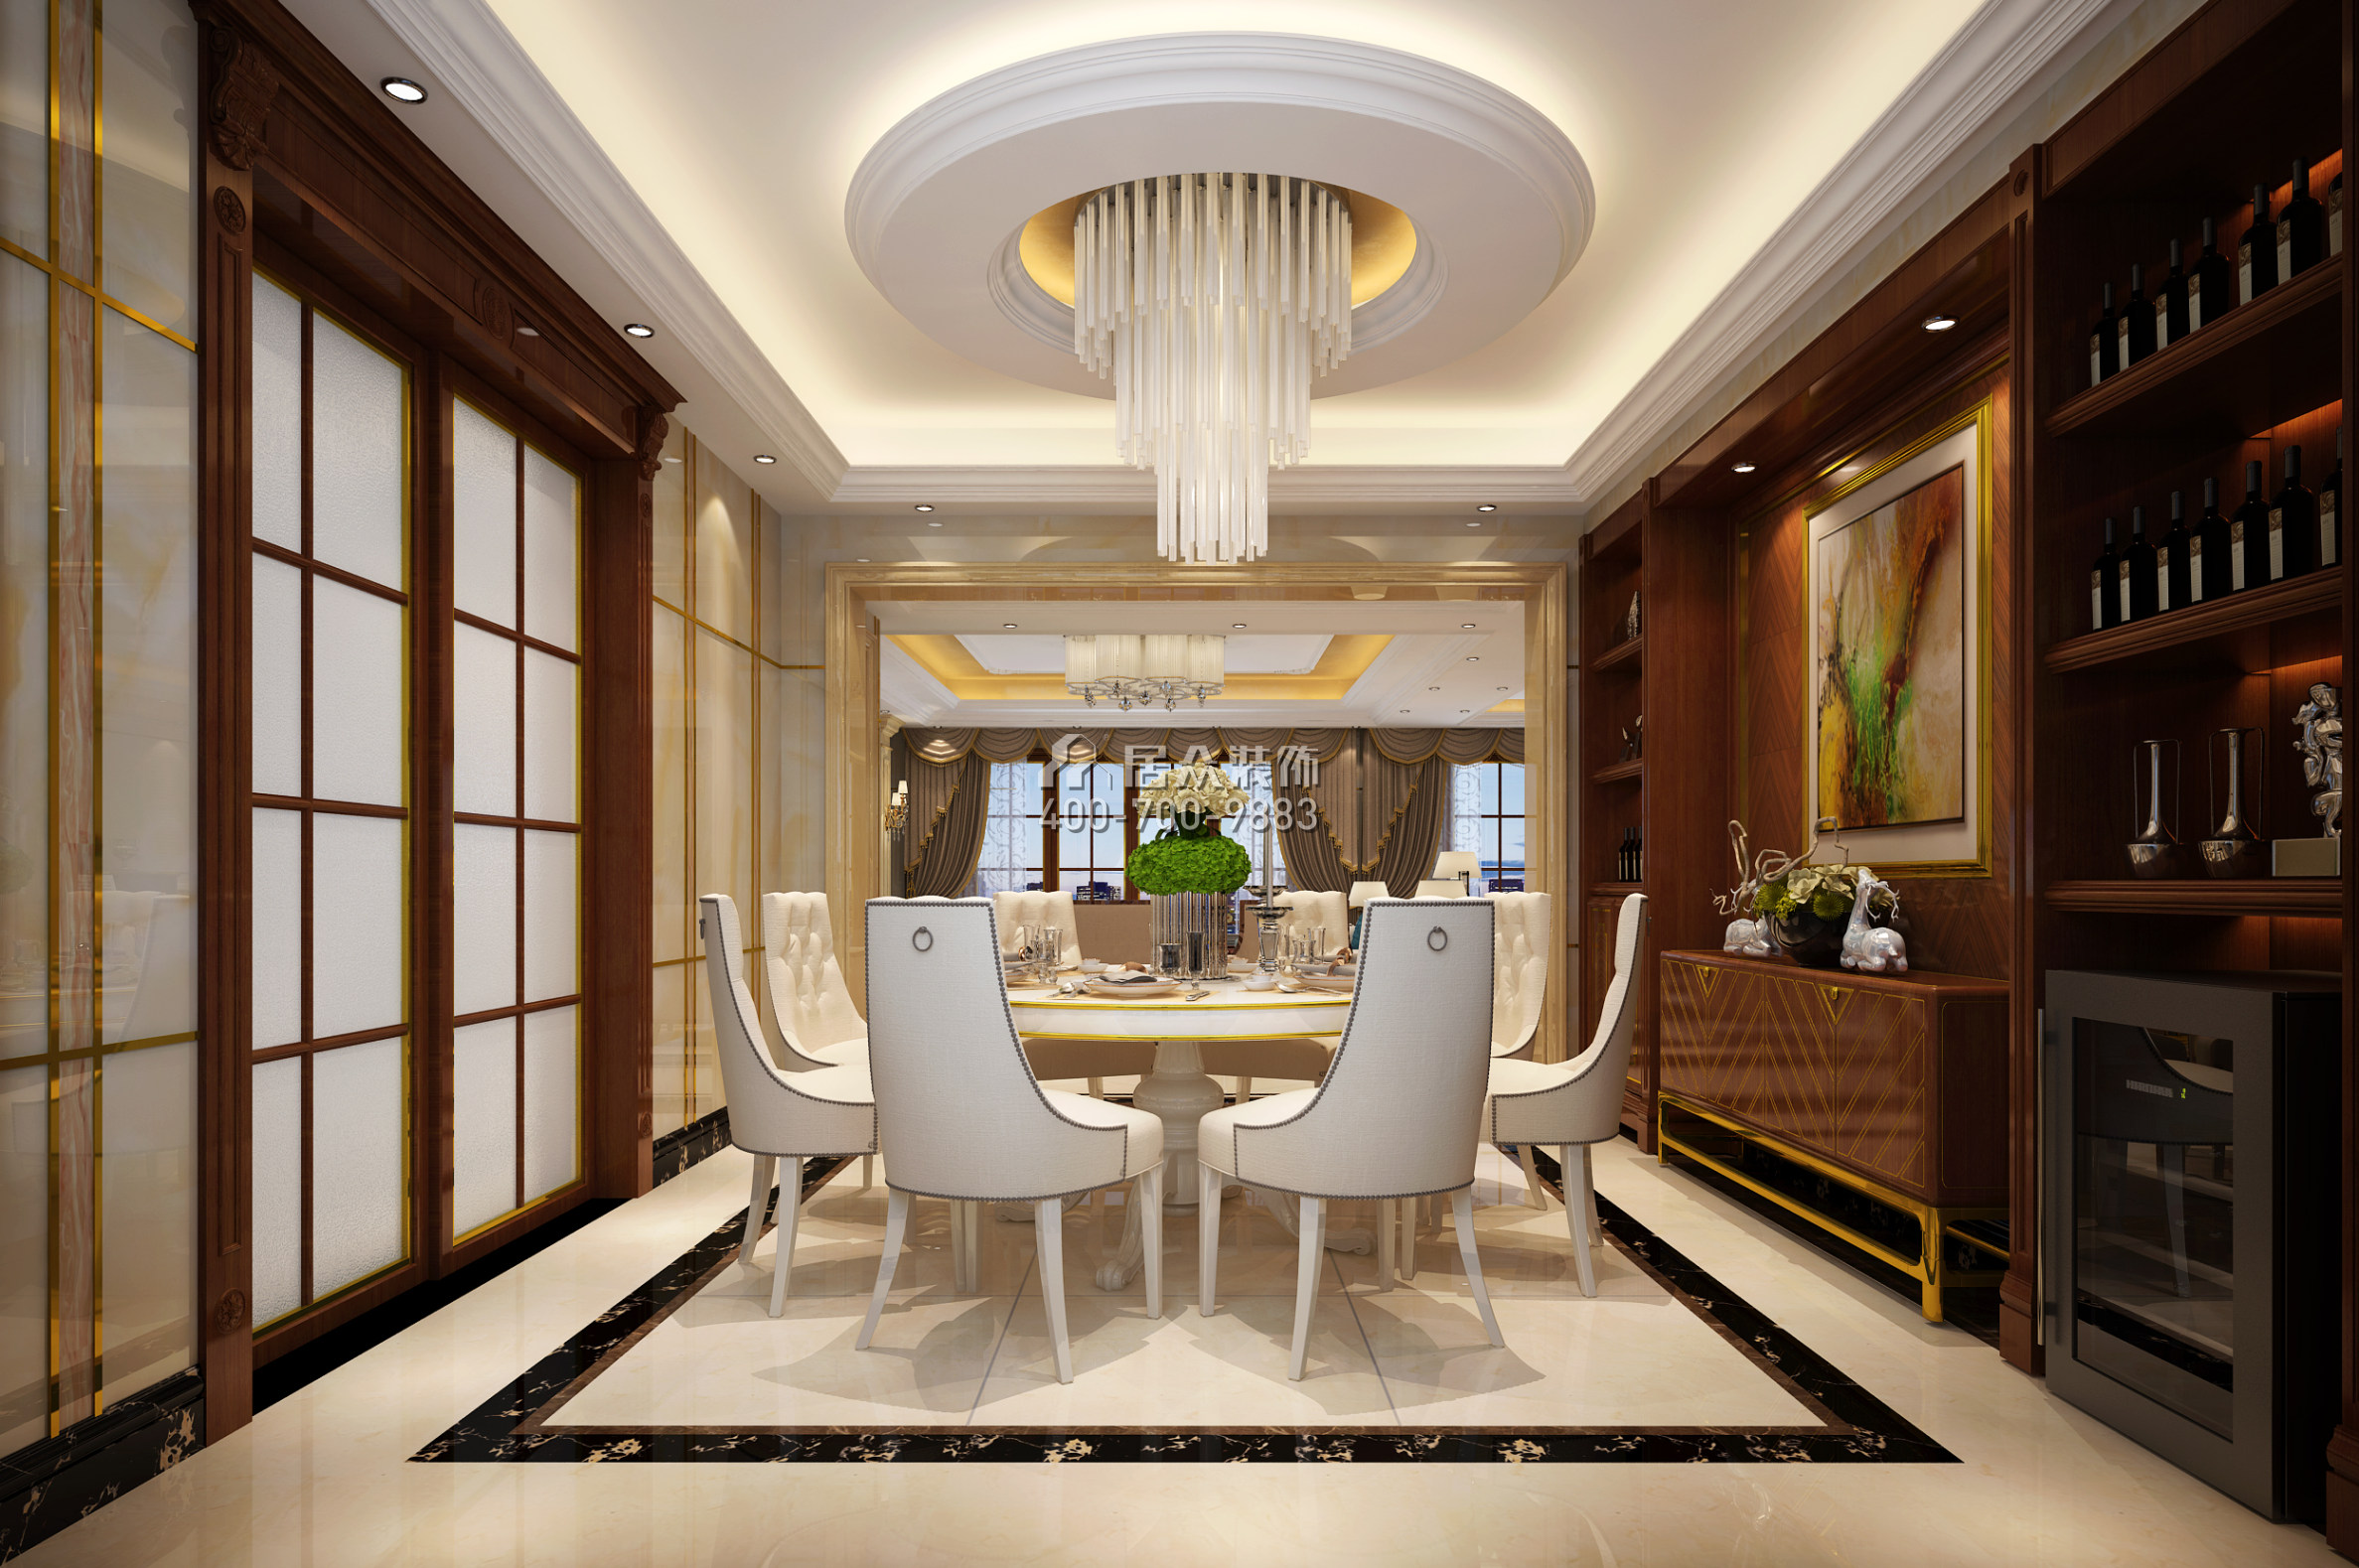 保利東江首府290平方米混搭風格平層戶型餐廳裝修效果圖